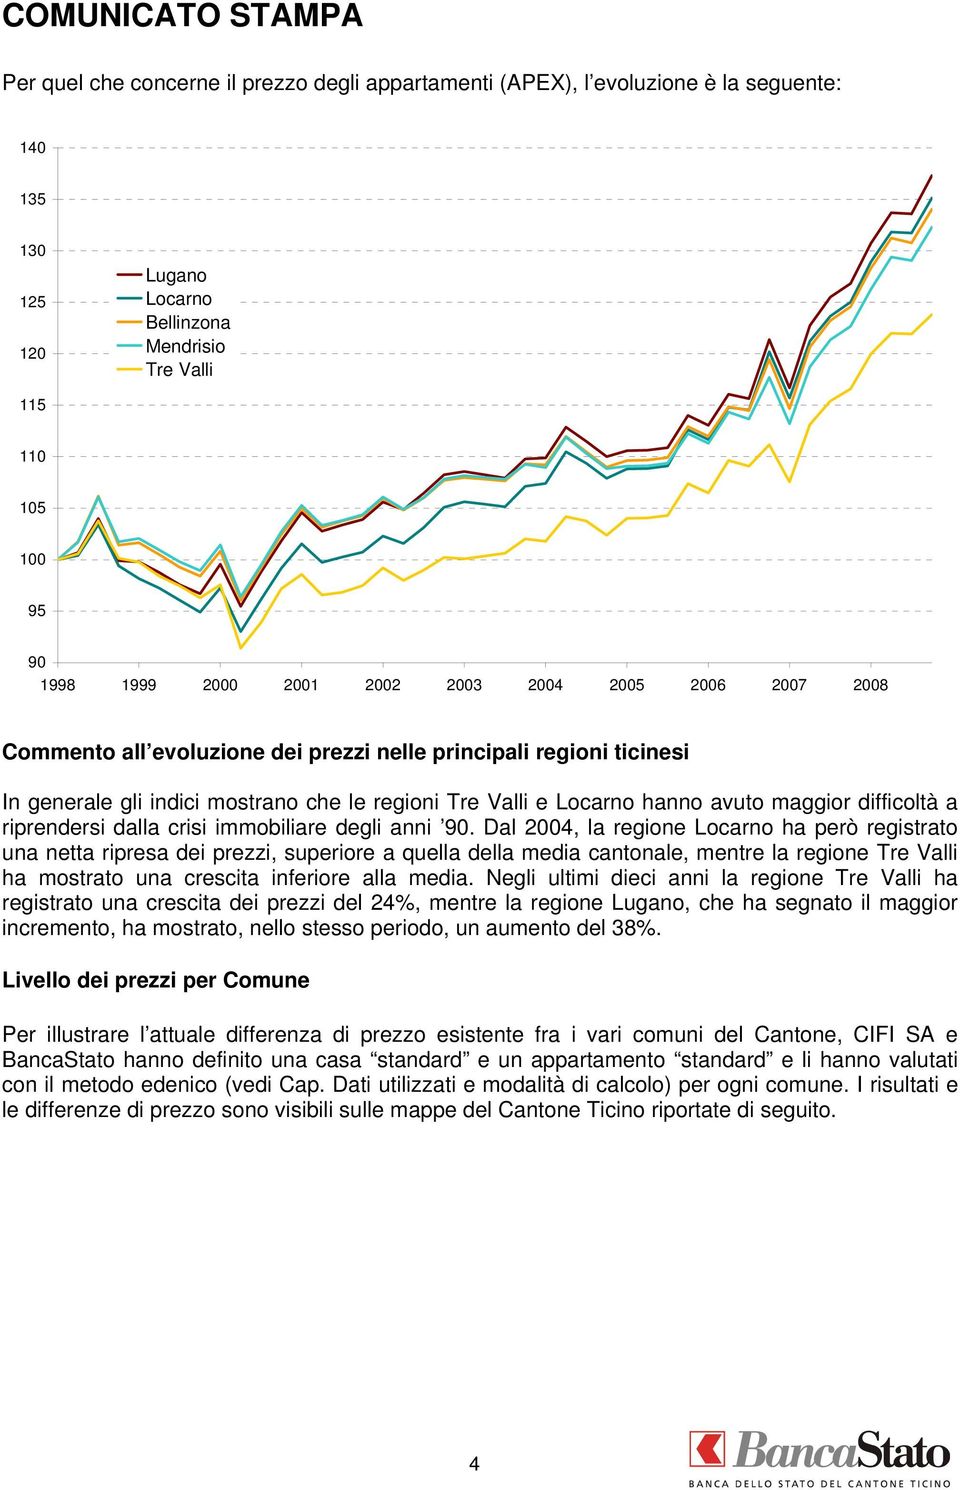 Dal 2004, la regione Locarno ha però registrato una netta ripresa dei prezzi, superiore a quella della media cantonale, mentre la regione Tre Valli ha mostrato una crescita inferiore alla media.